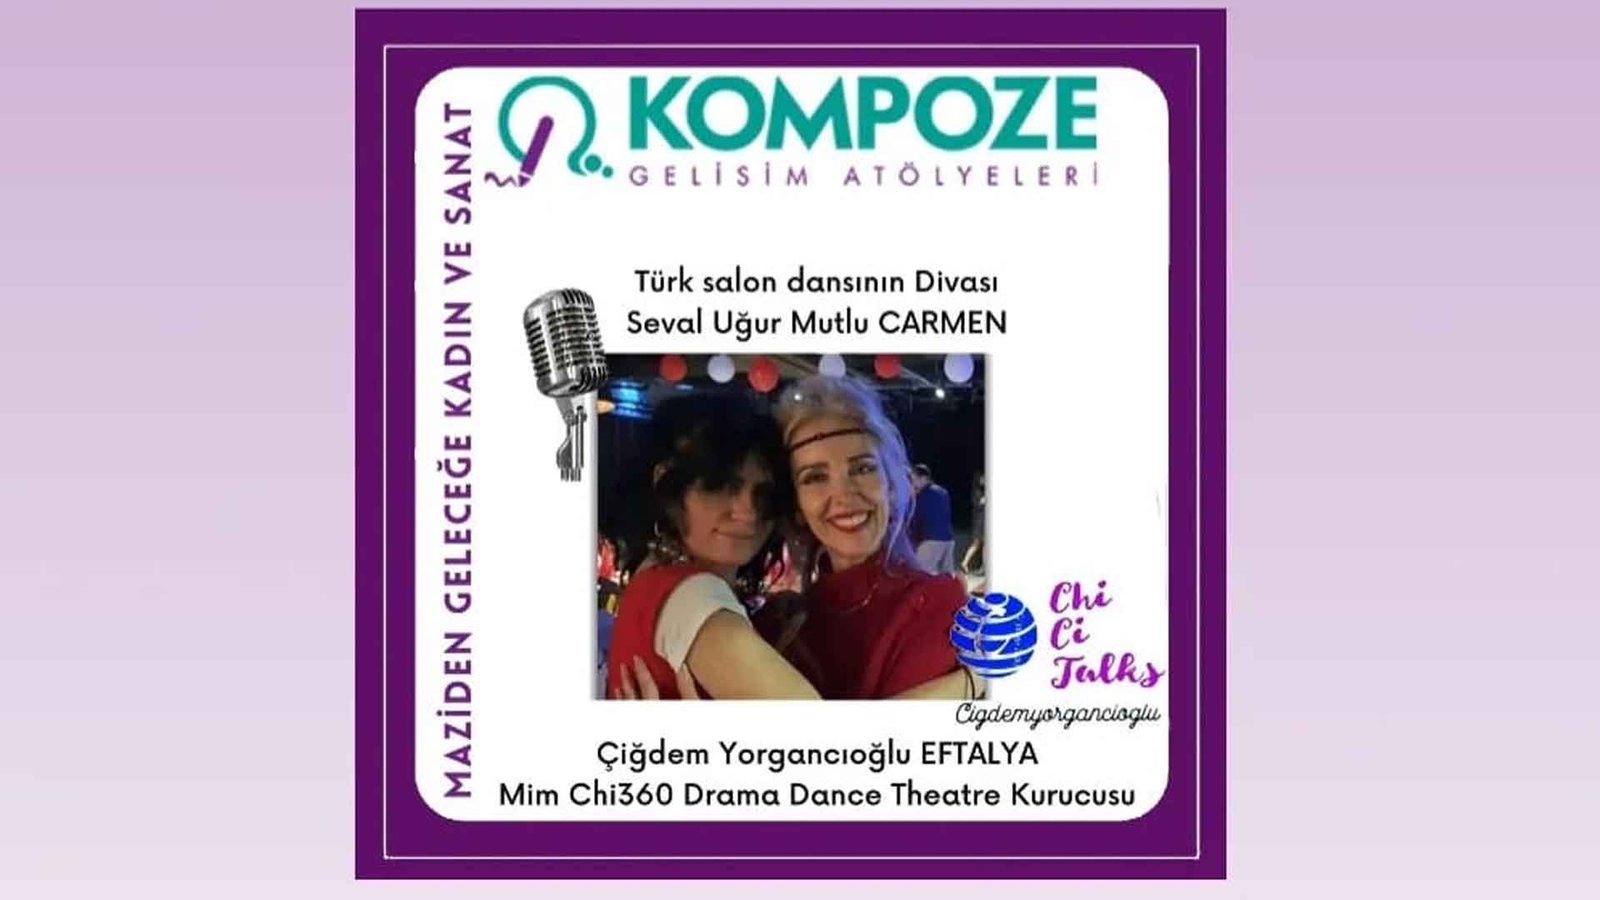 Mimchi 360 Drama Dans Tiyatrosu Kurucusu Çiğdem Yorgancıoğlu, Eftalya Ve Türk Salon Dansının Divası Seval Uğur Mutlu Carmen Kompoze'de Chi Ci Talks'da 1